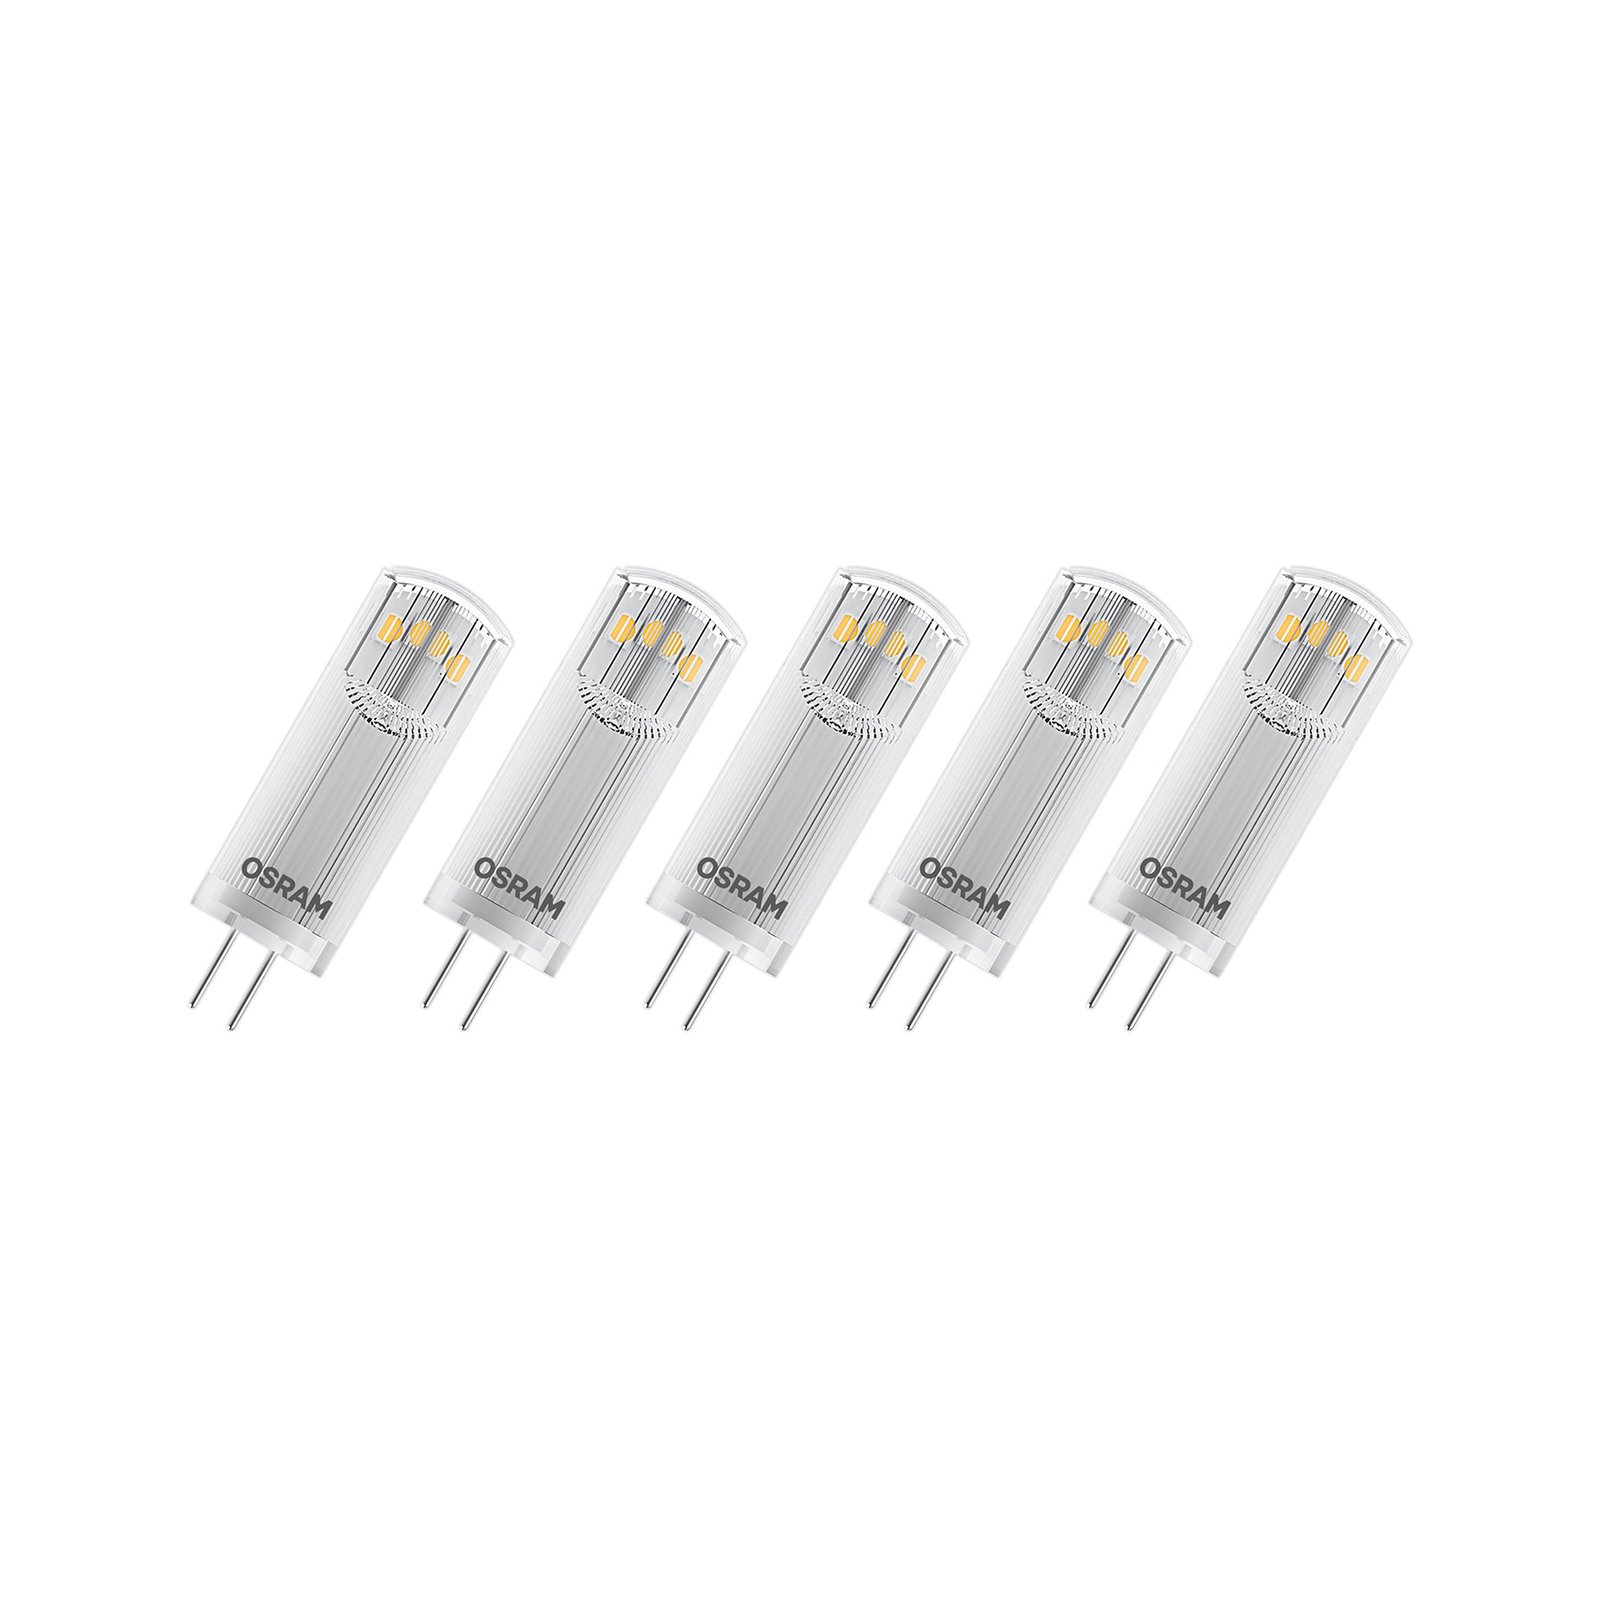 OSRAM Base PIN LED kolík žárovka G4 1,8W 200lm 5ks